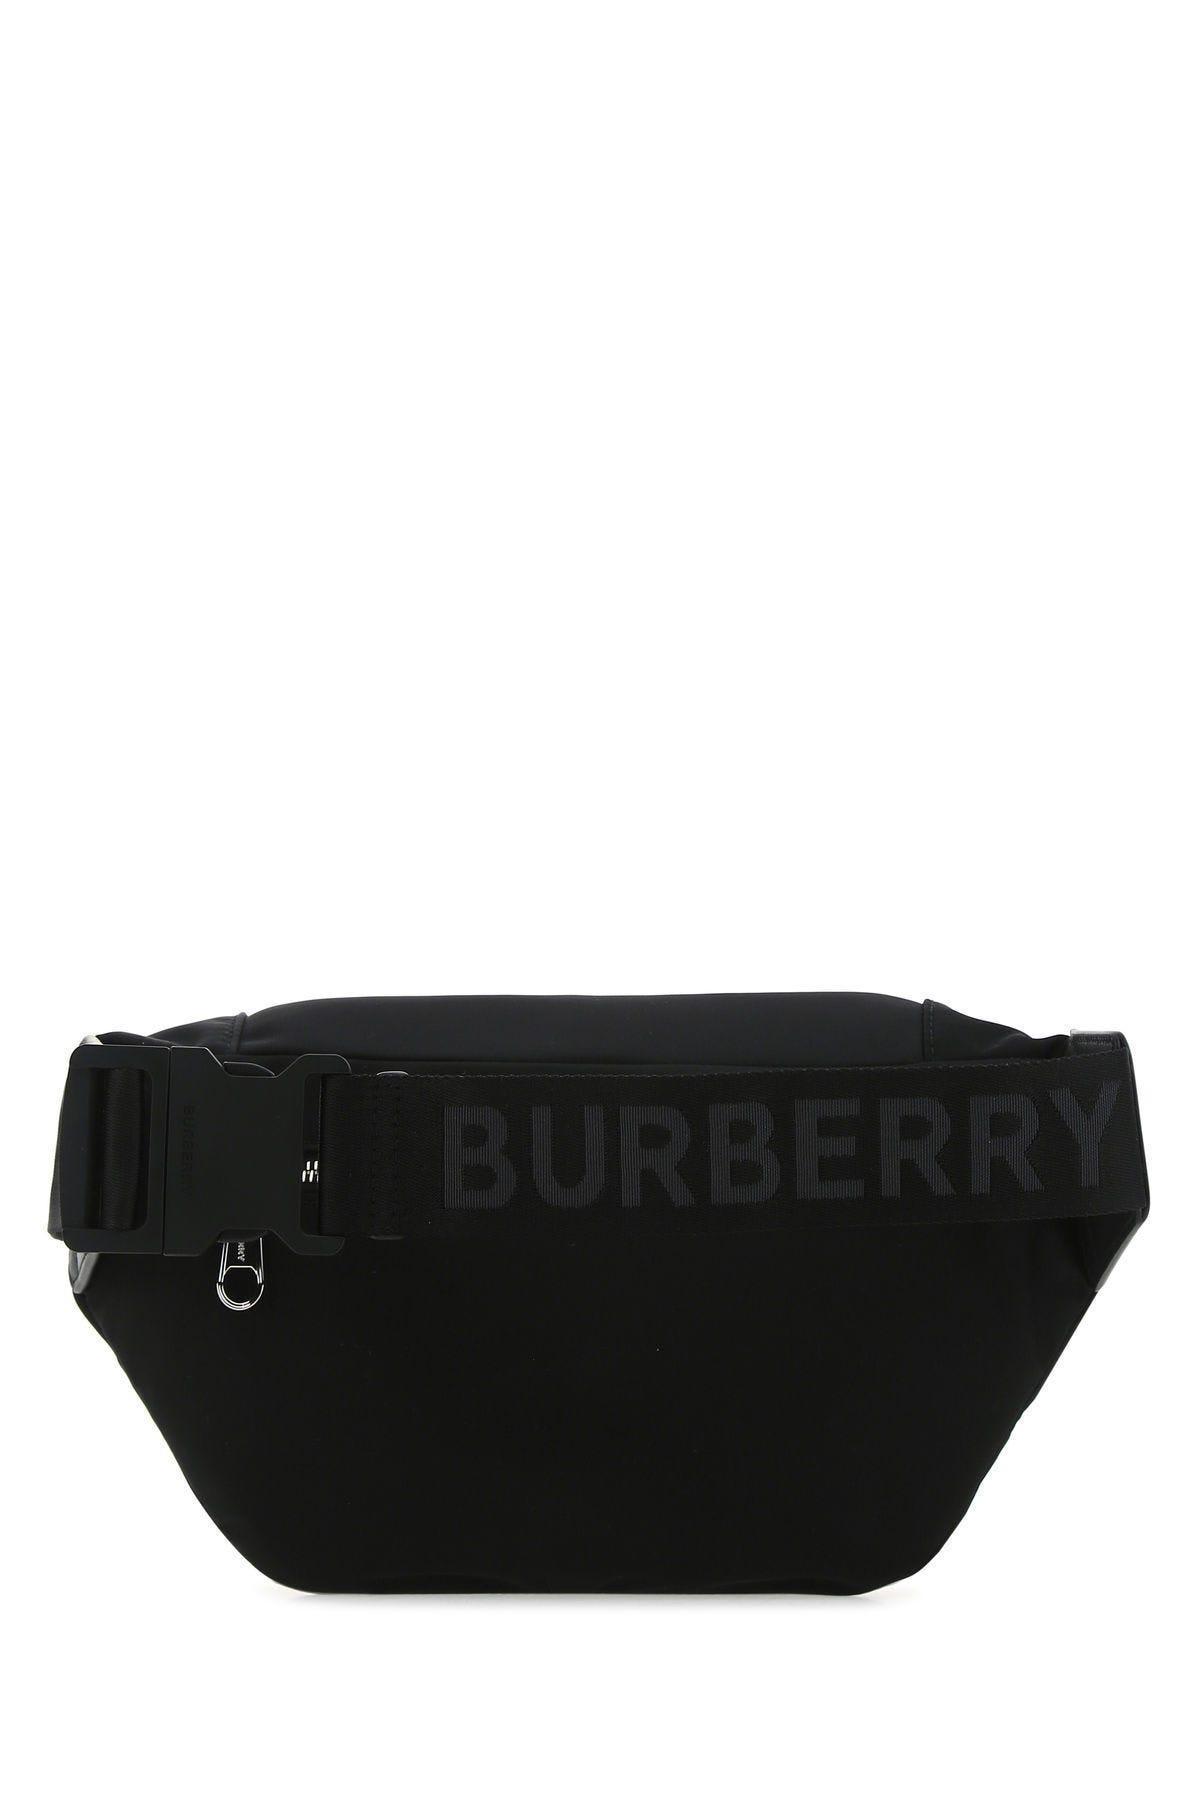 BURBERRY Waist bag SONNY in black